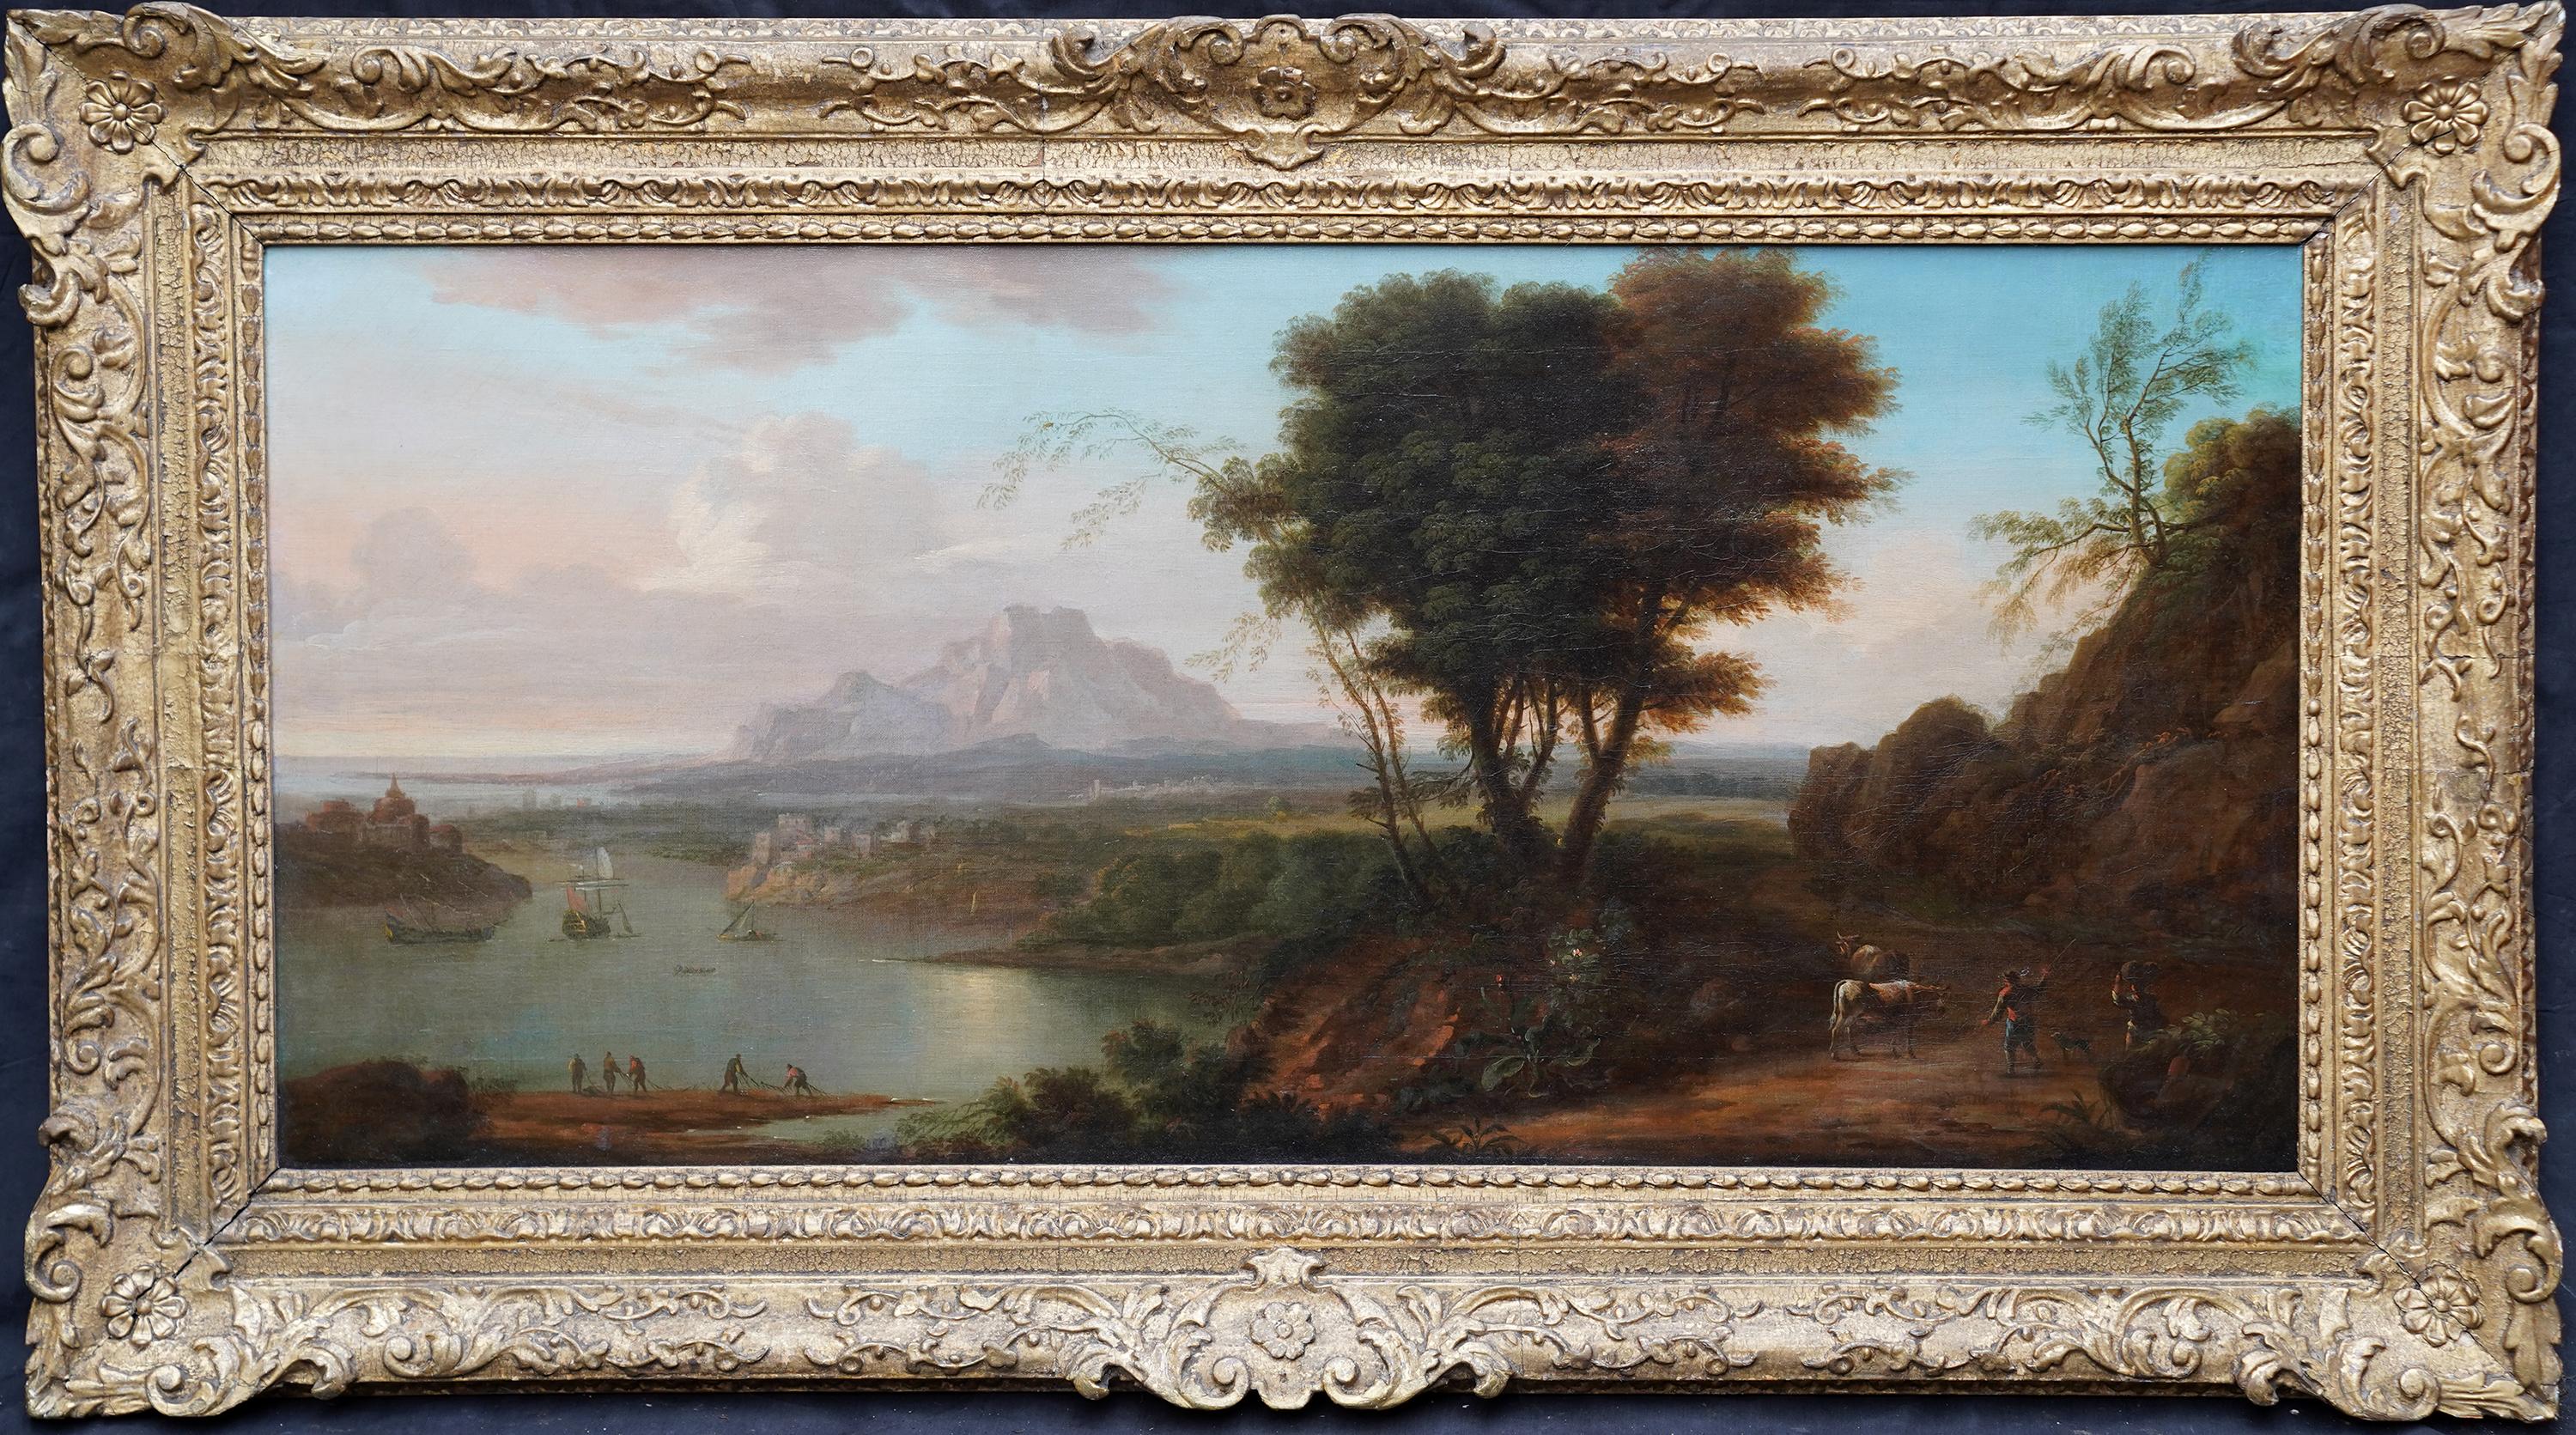 Adriaen van Diest Landscape Painting - Italian Landscape - Dutch Old Master art Grand Tour landscape oil painting 